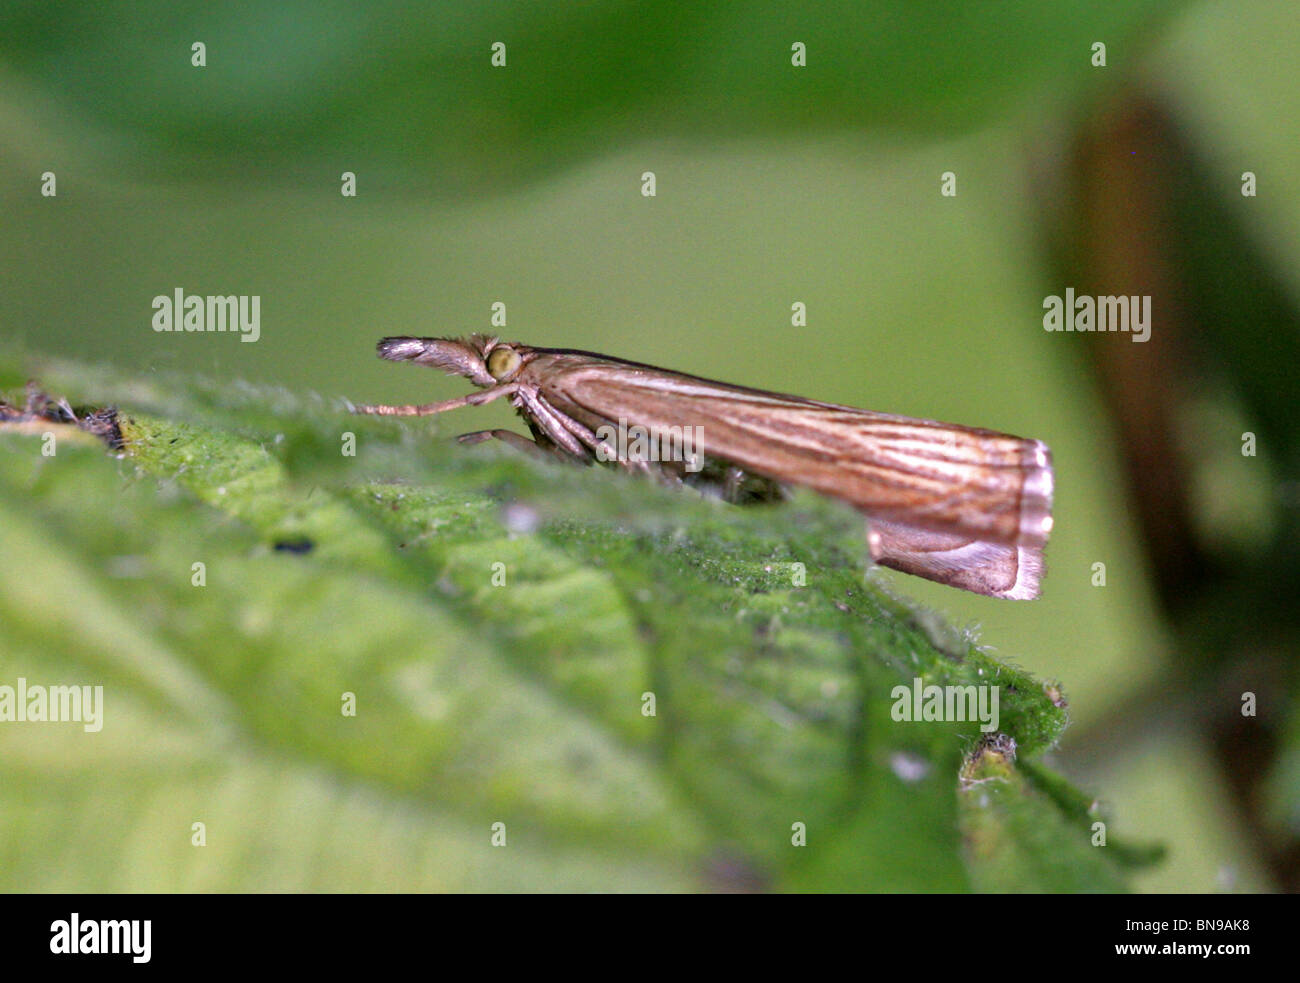 Crambid Schnauze Motte, Crambus SP., Crambidae, Lepidoptera. Stockfoto